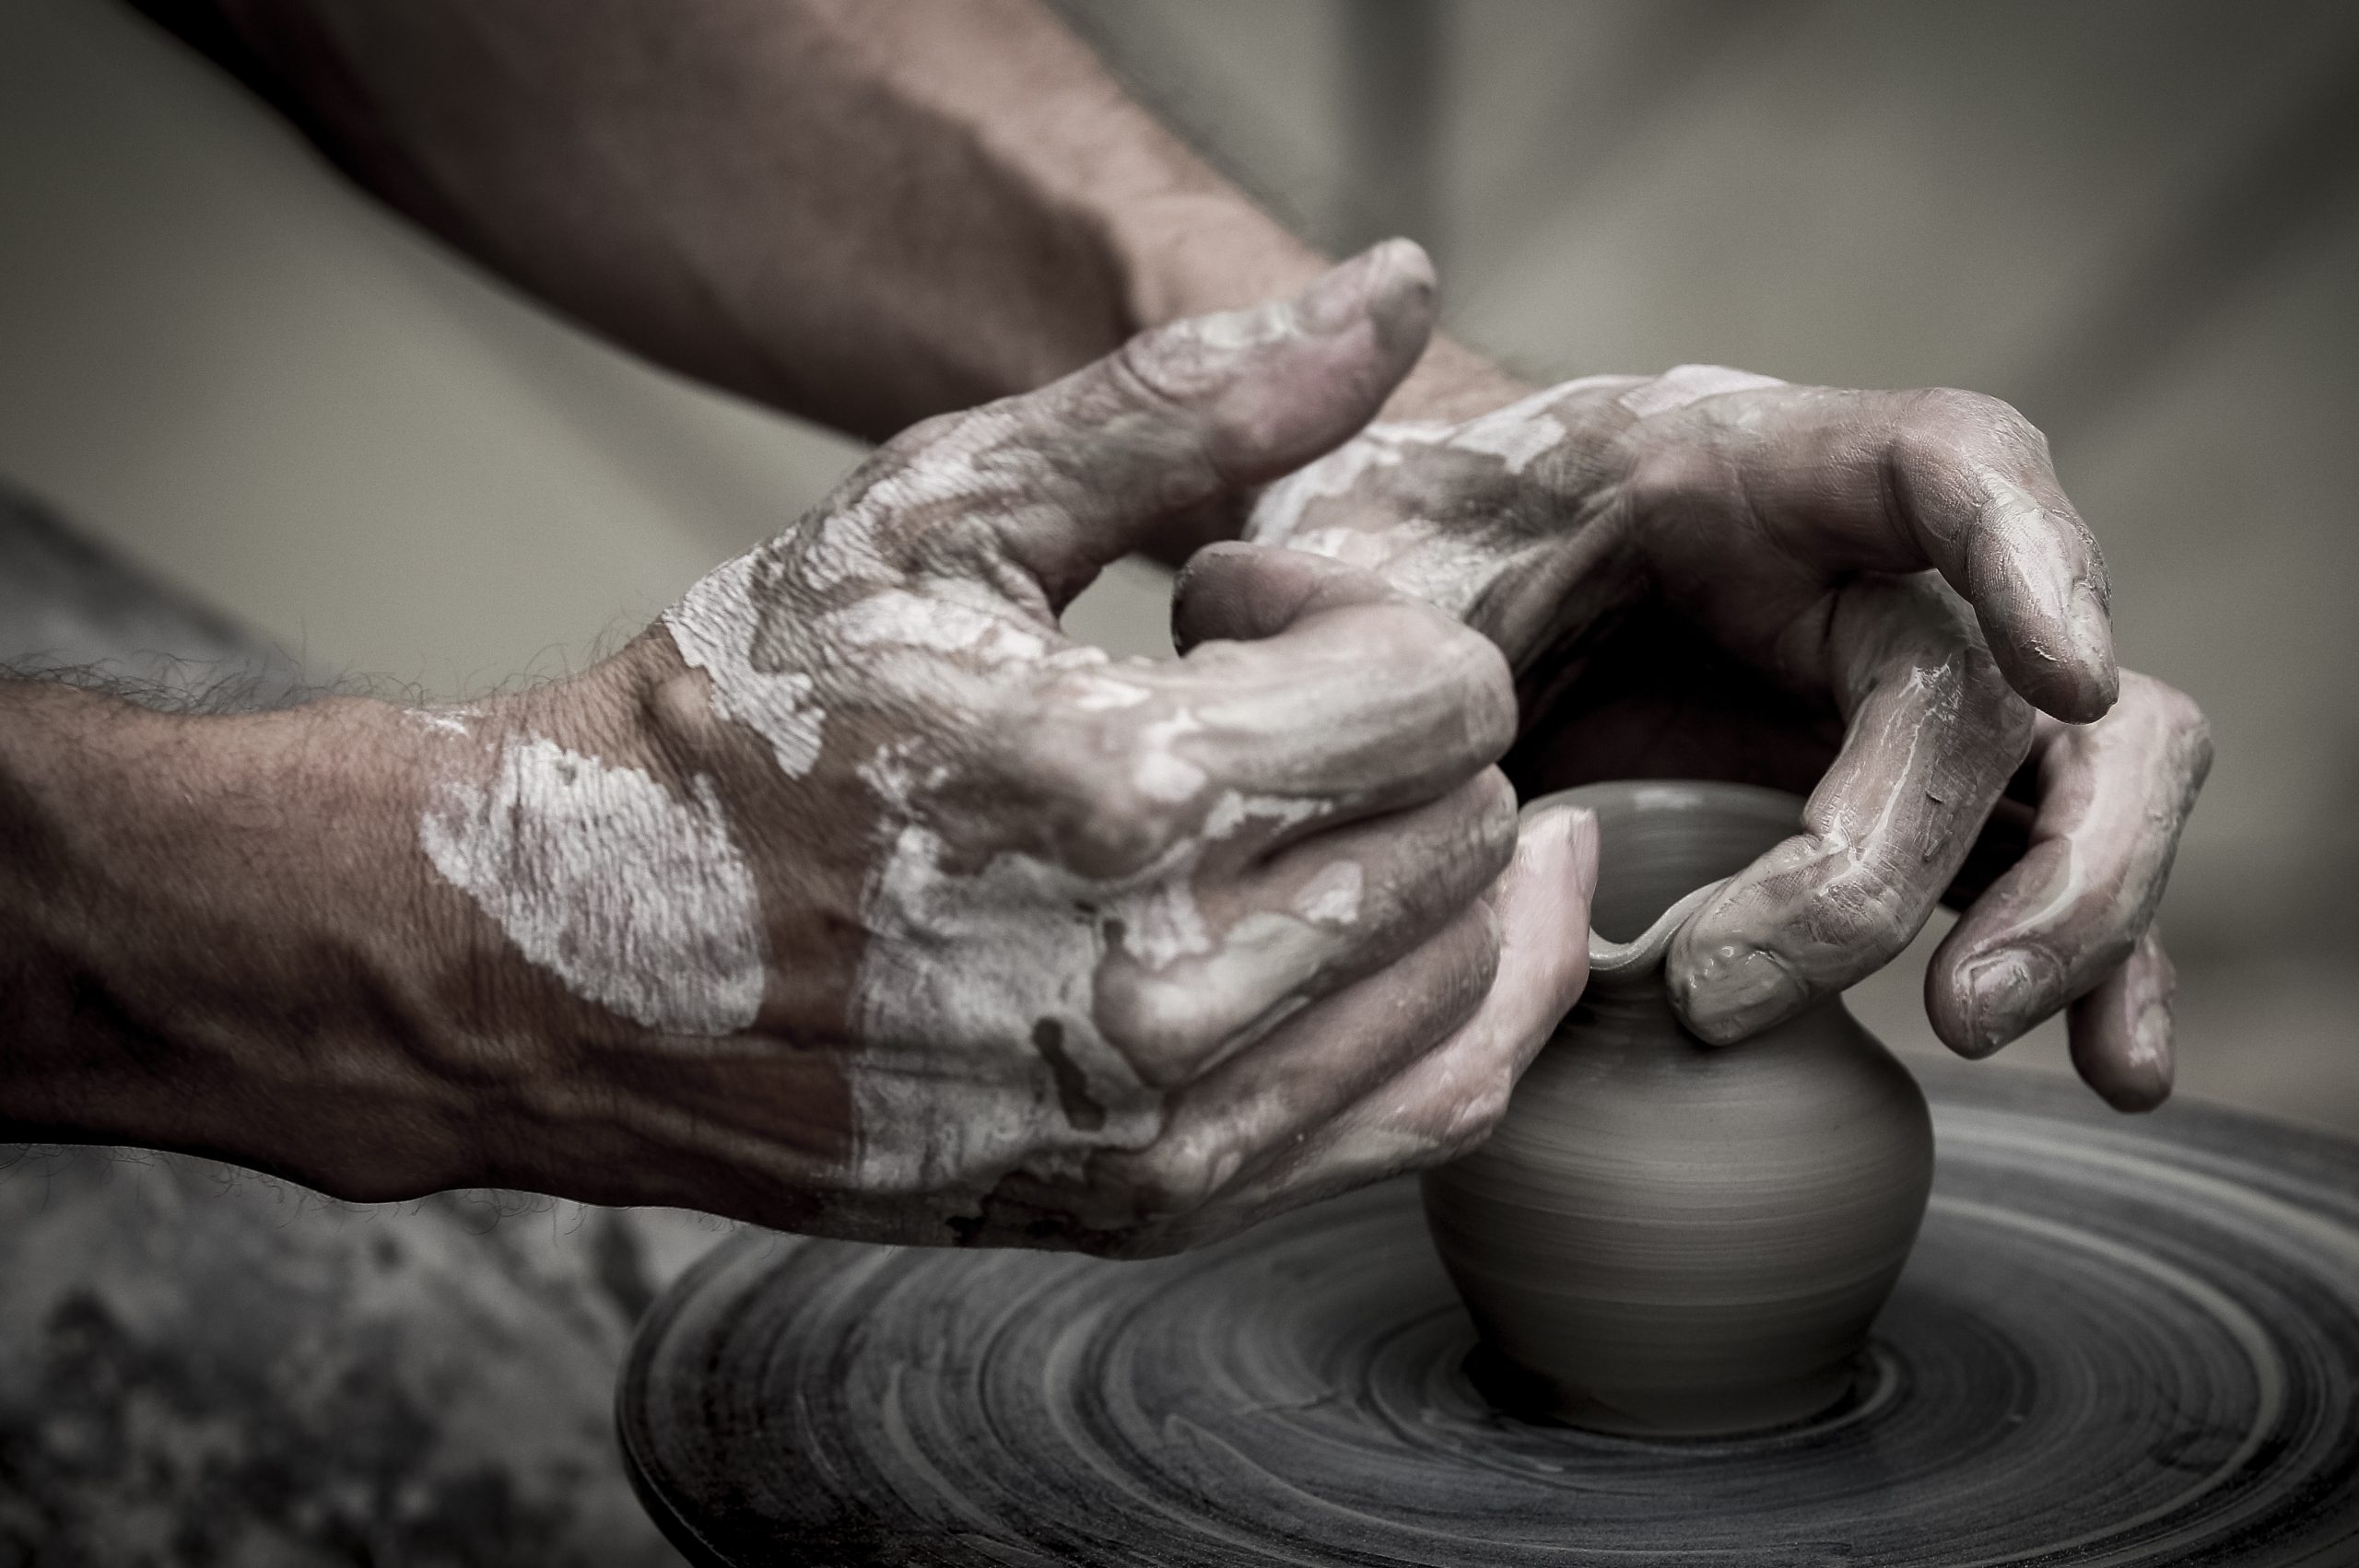 potter's hands